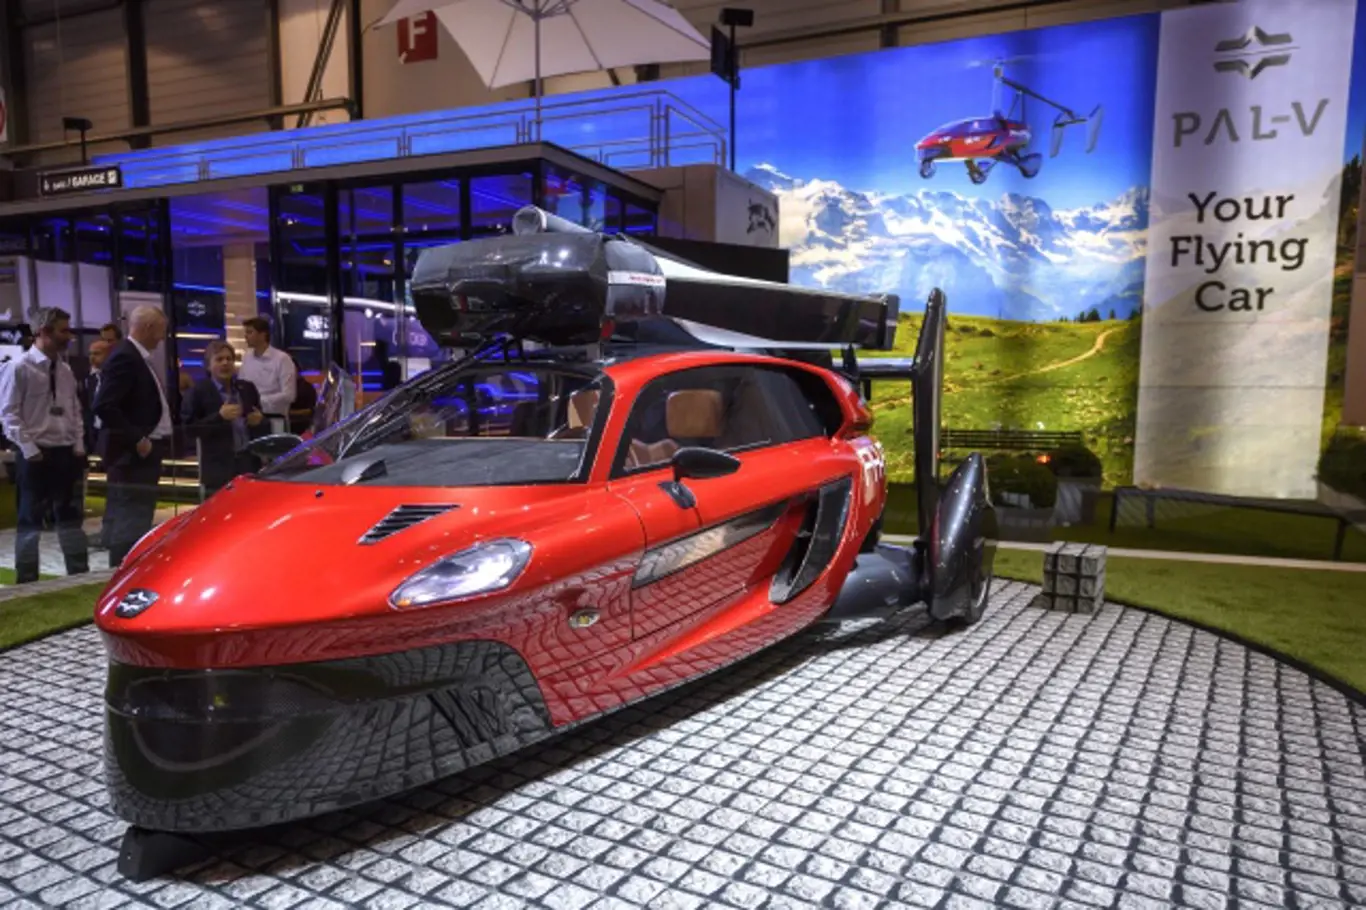 Na ženevském autosalonu se představil model nizozemské společnosti Pal-V